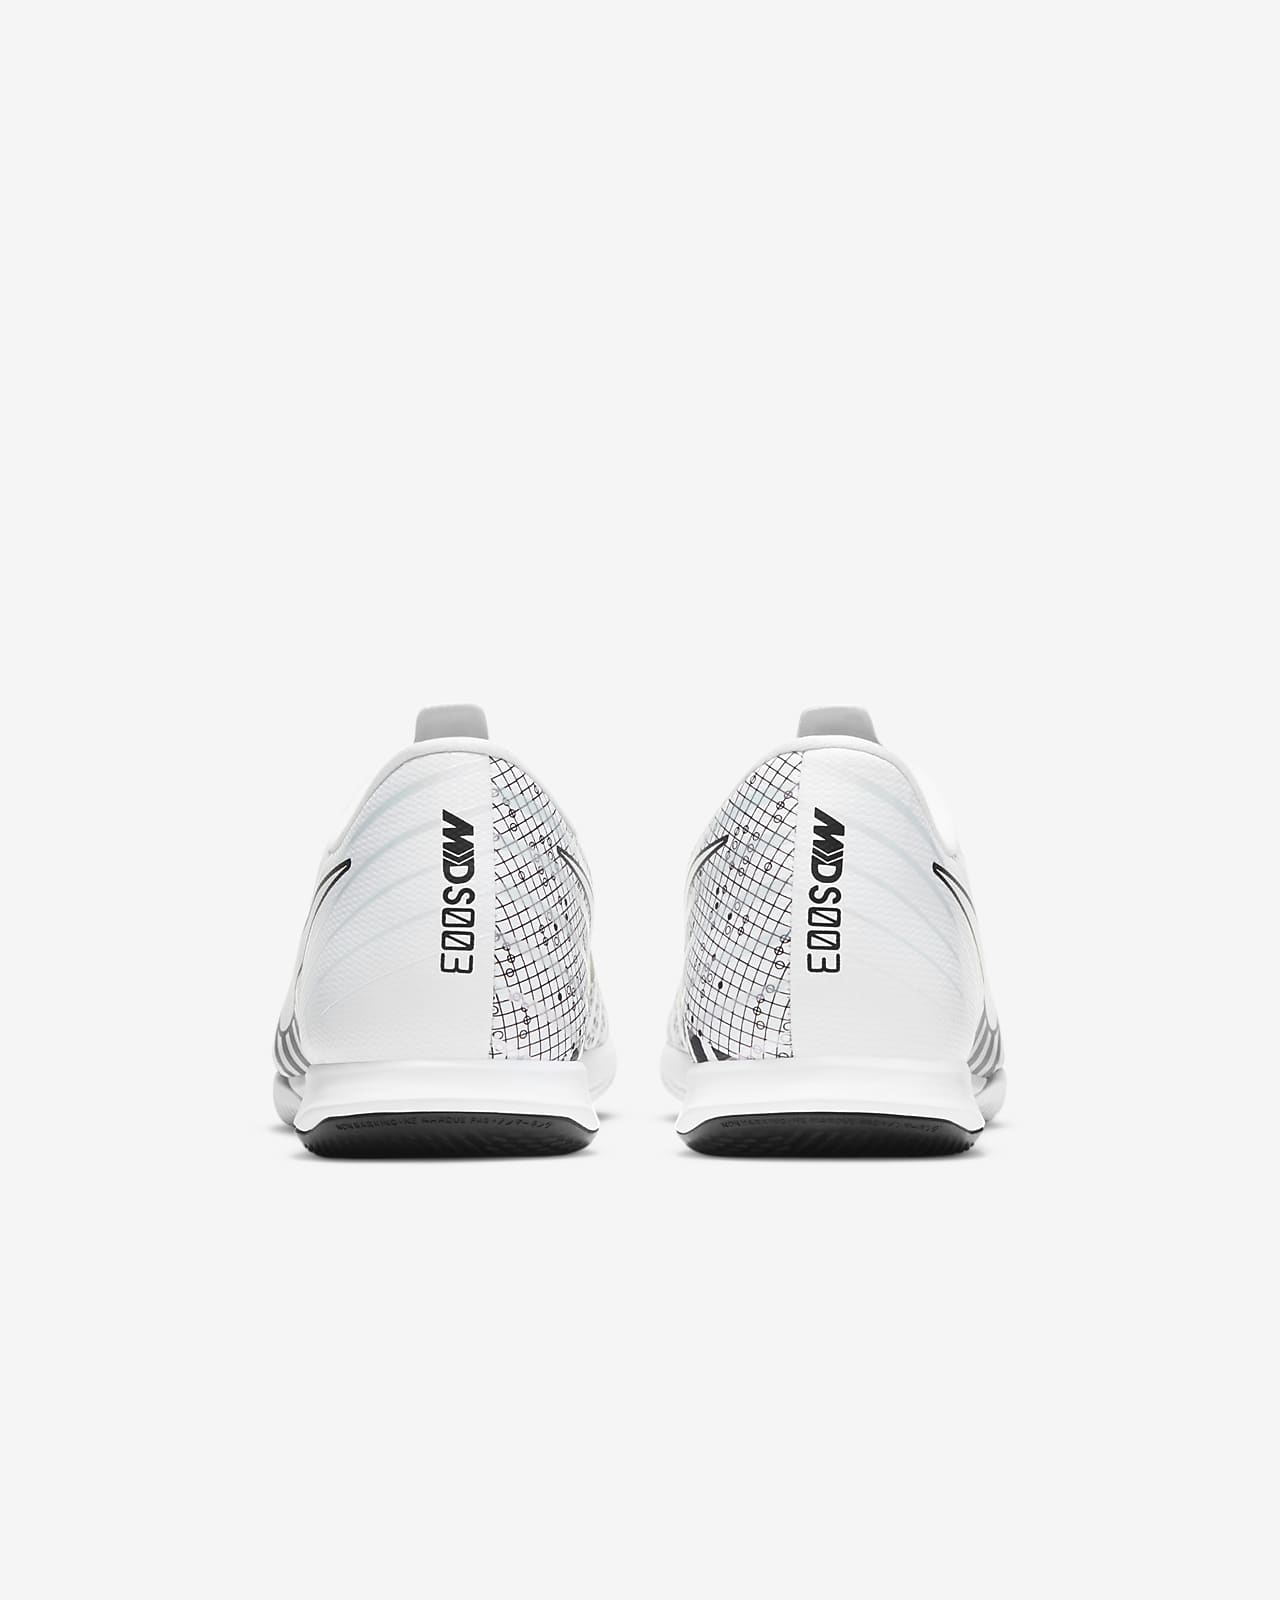 mercurial vapor indoor shoes